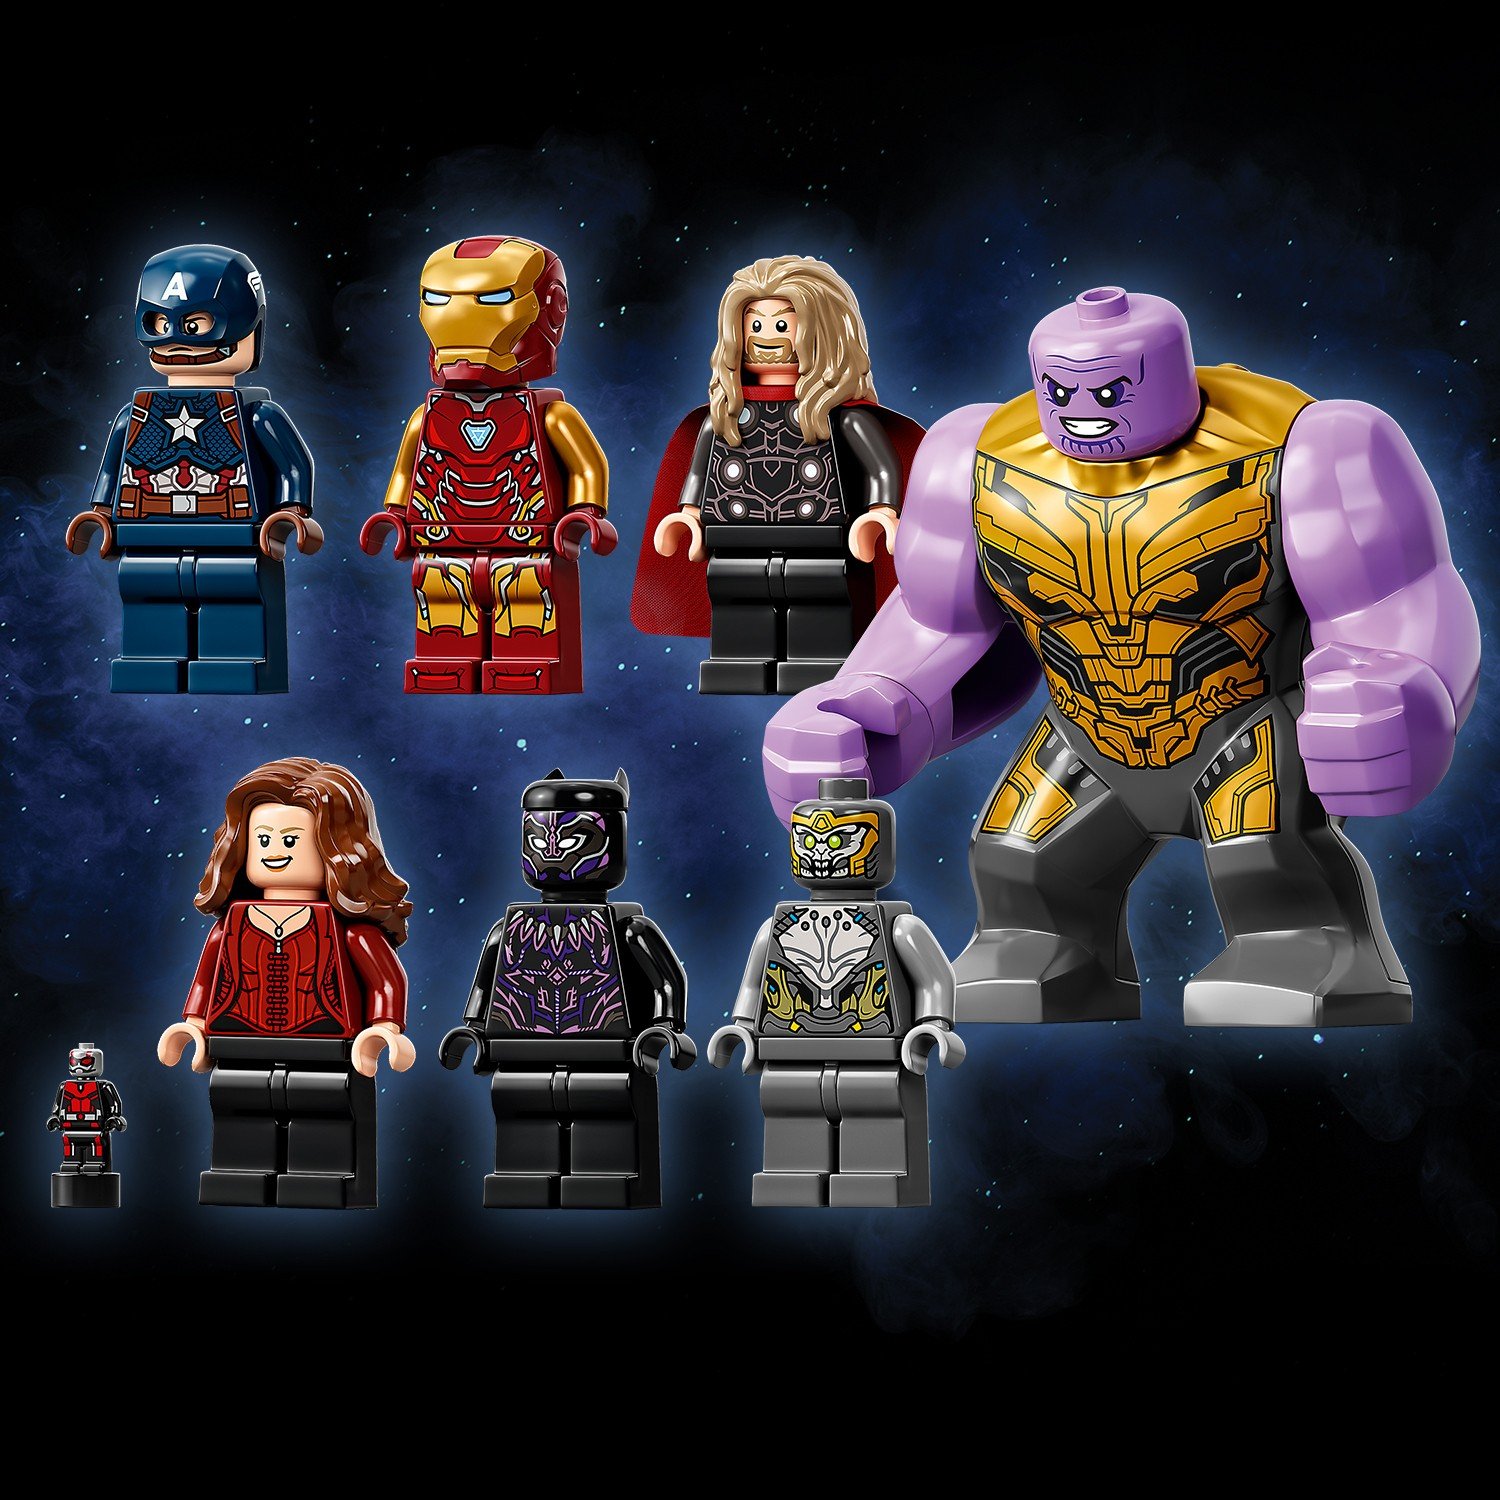 Конструктор LEGO Super Heroes 76192 «Мстители: Финал» — решающая битва